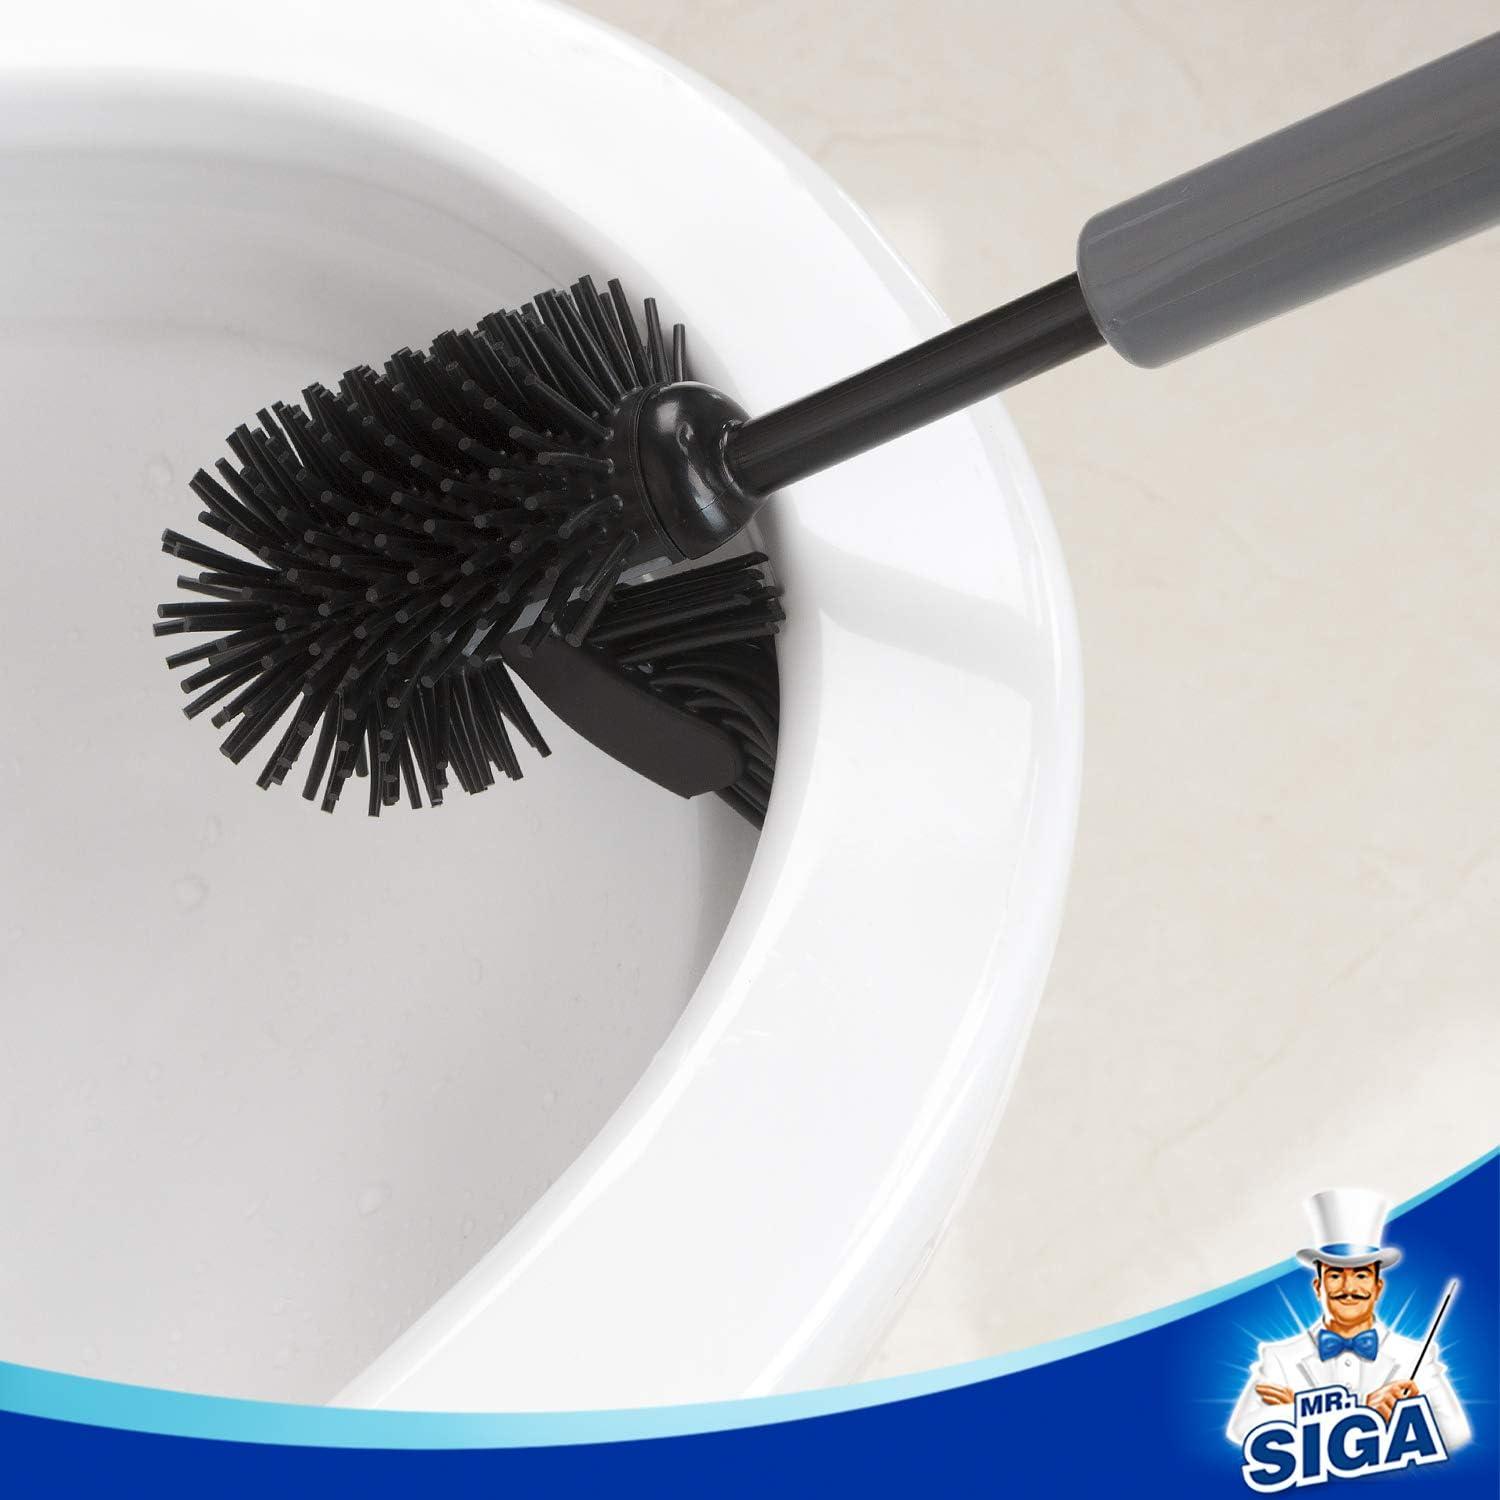  Mr. Clean Rim Toilet Bowl Brush : Home & Kitchen